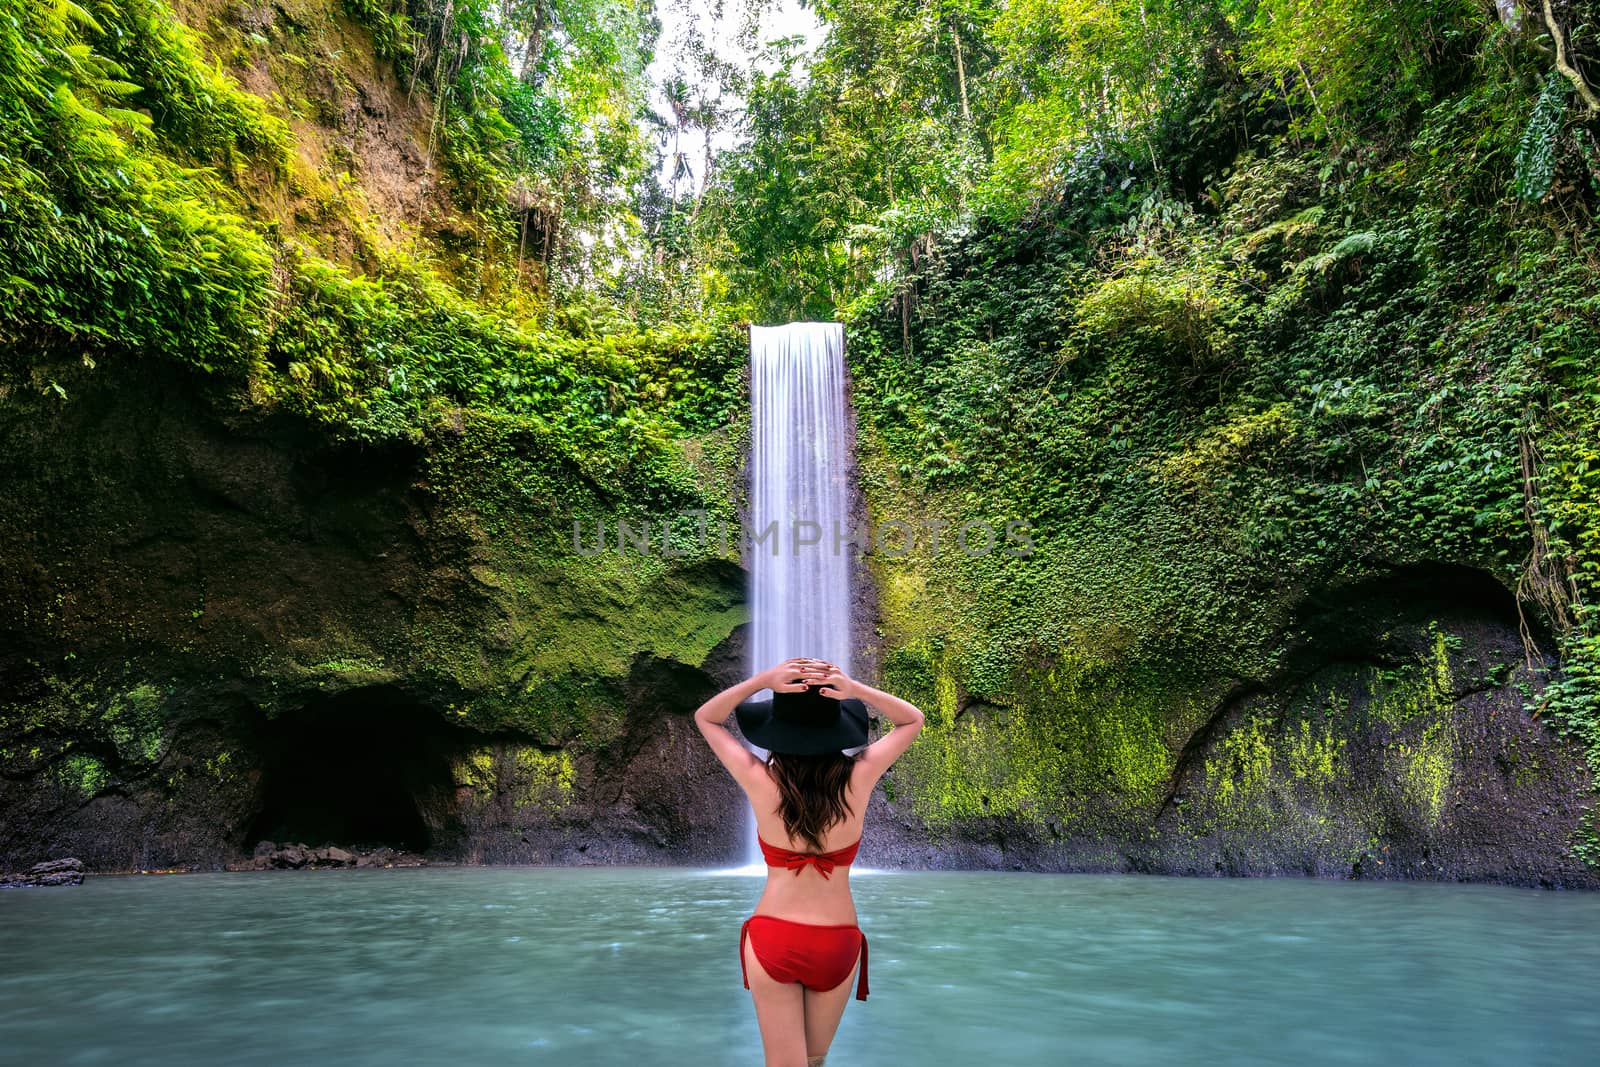 Woman standing in Tibumana waterfall in Bali island, Indonesia.